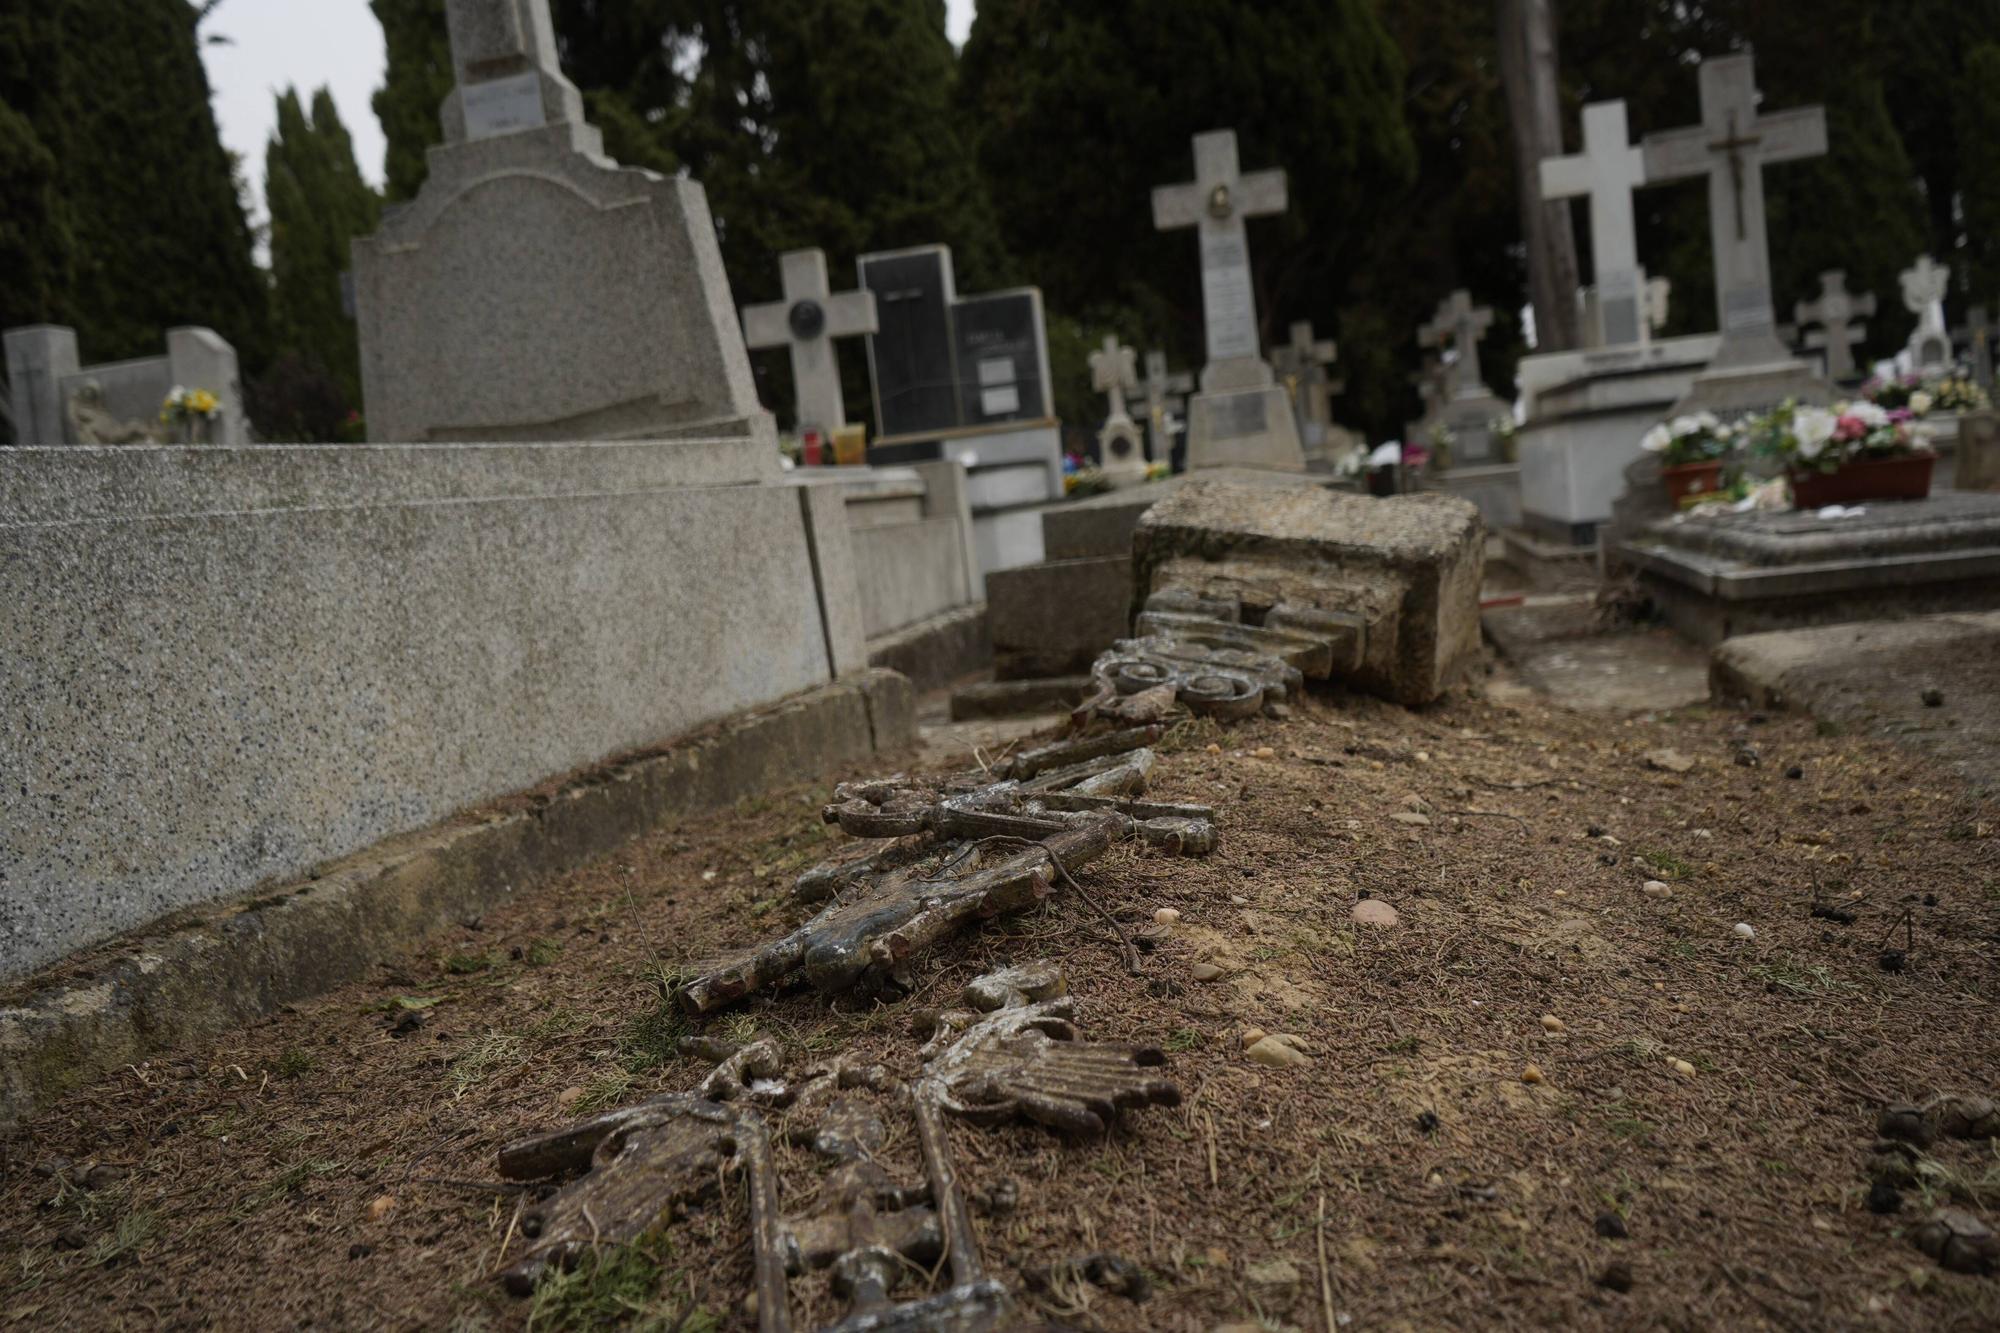 GALERÍA | Historia del cementerio de Zamora, en imágenes